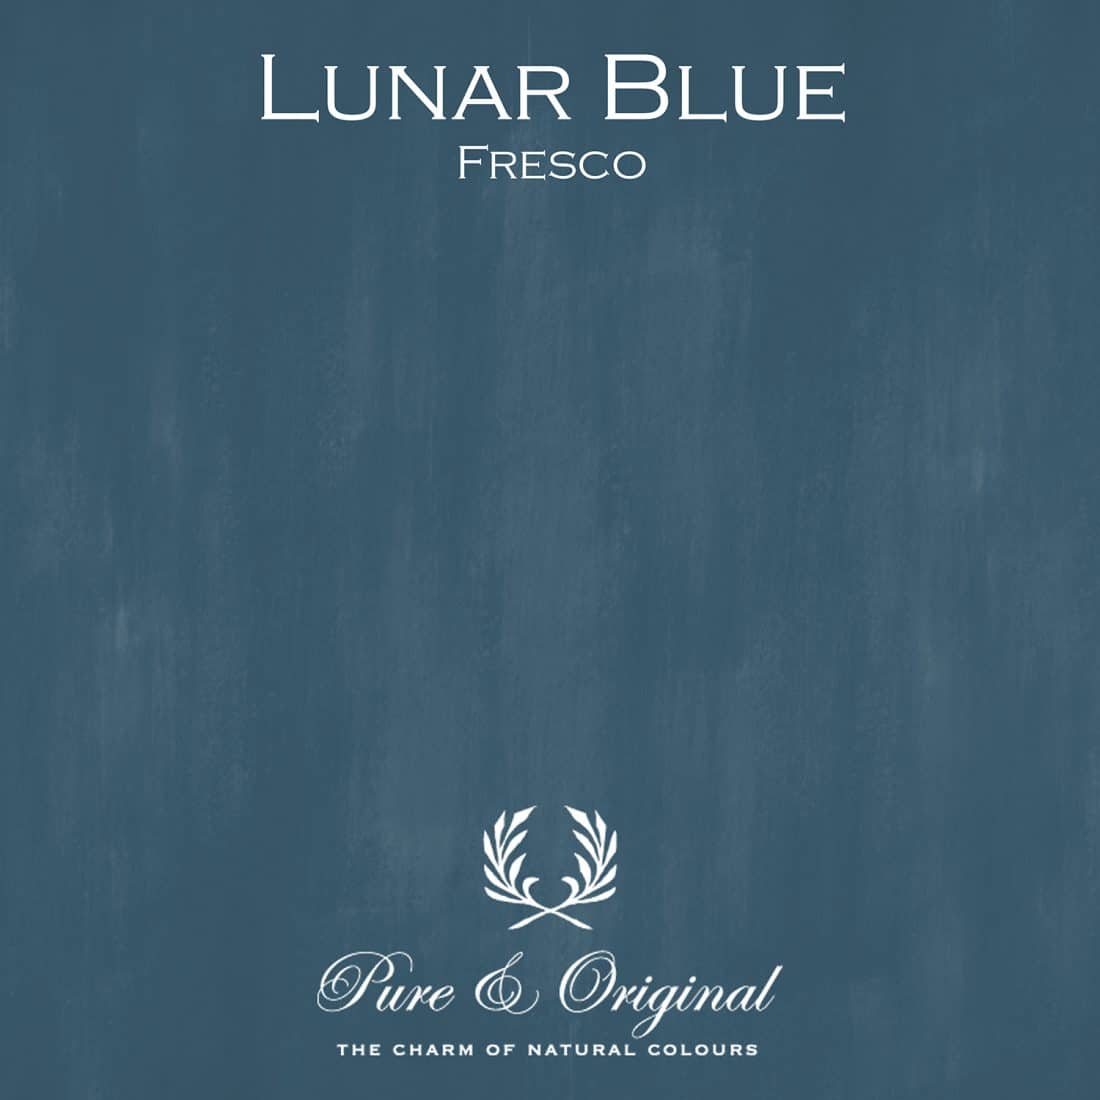 Lunar Blue Fresco